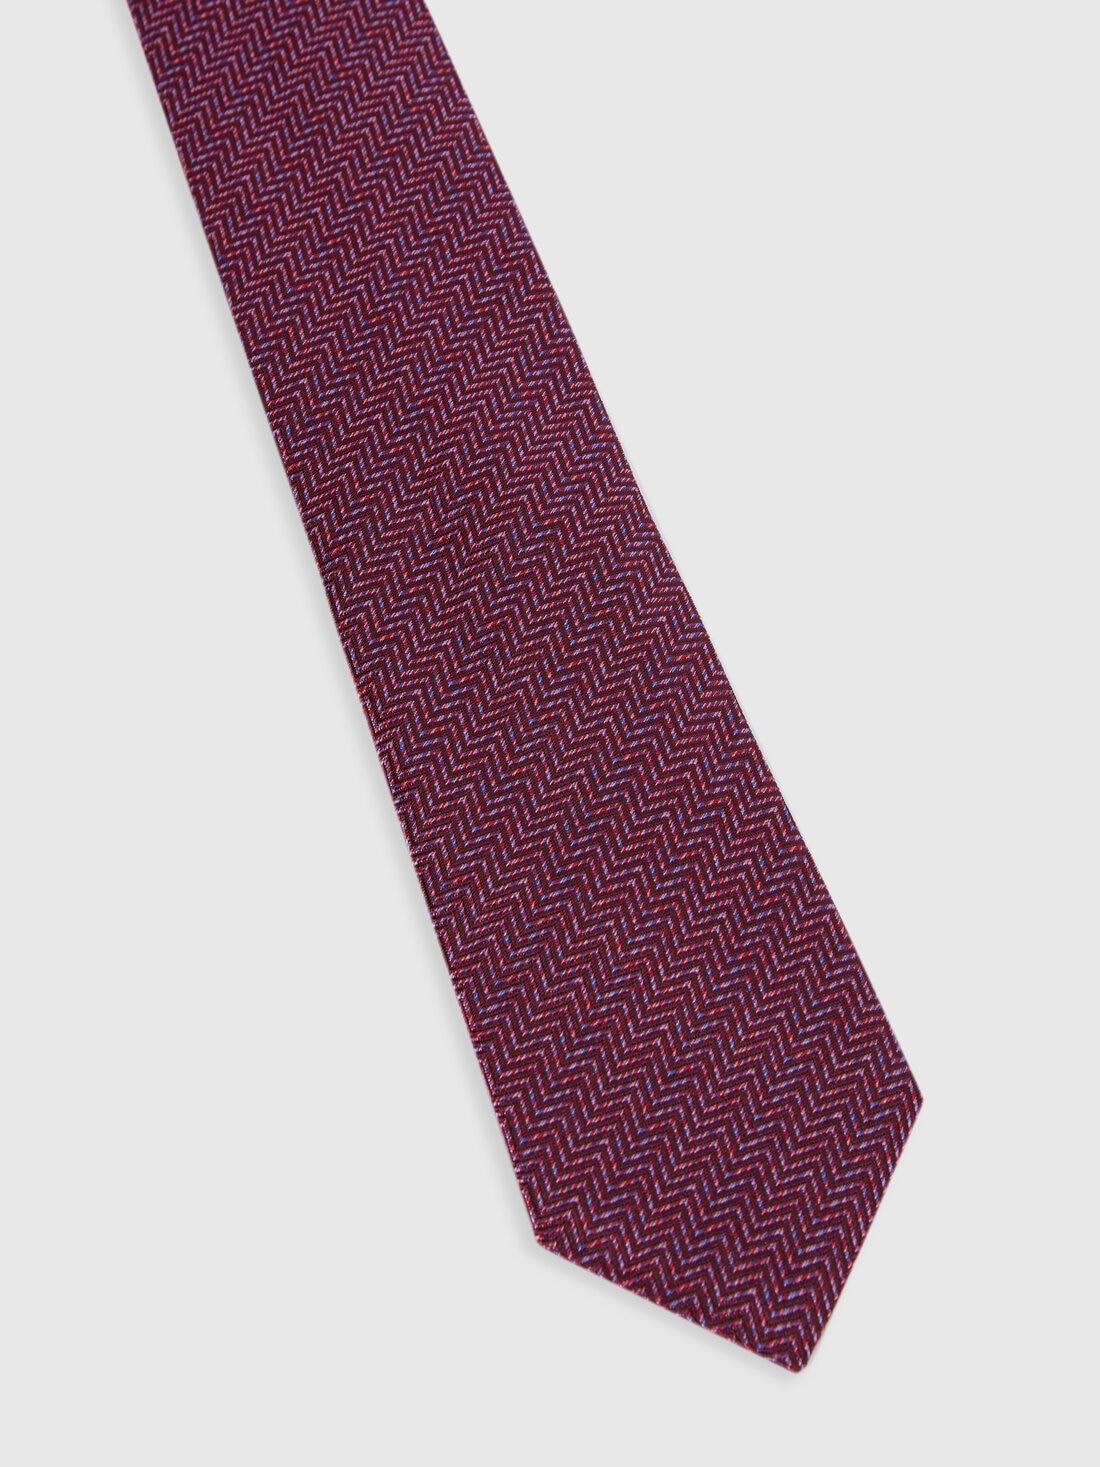 Silk chevron tie, Multicoloured  - 8053147141947 - 1